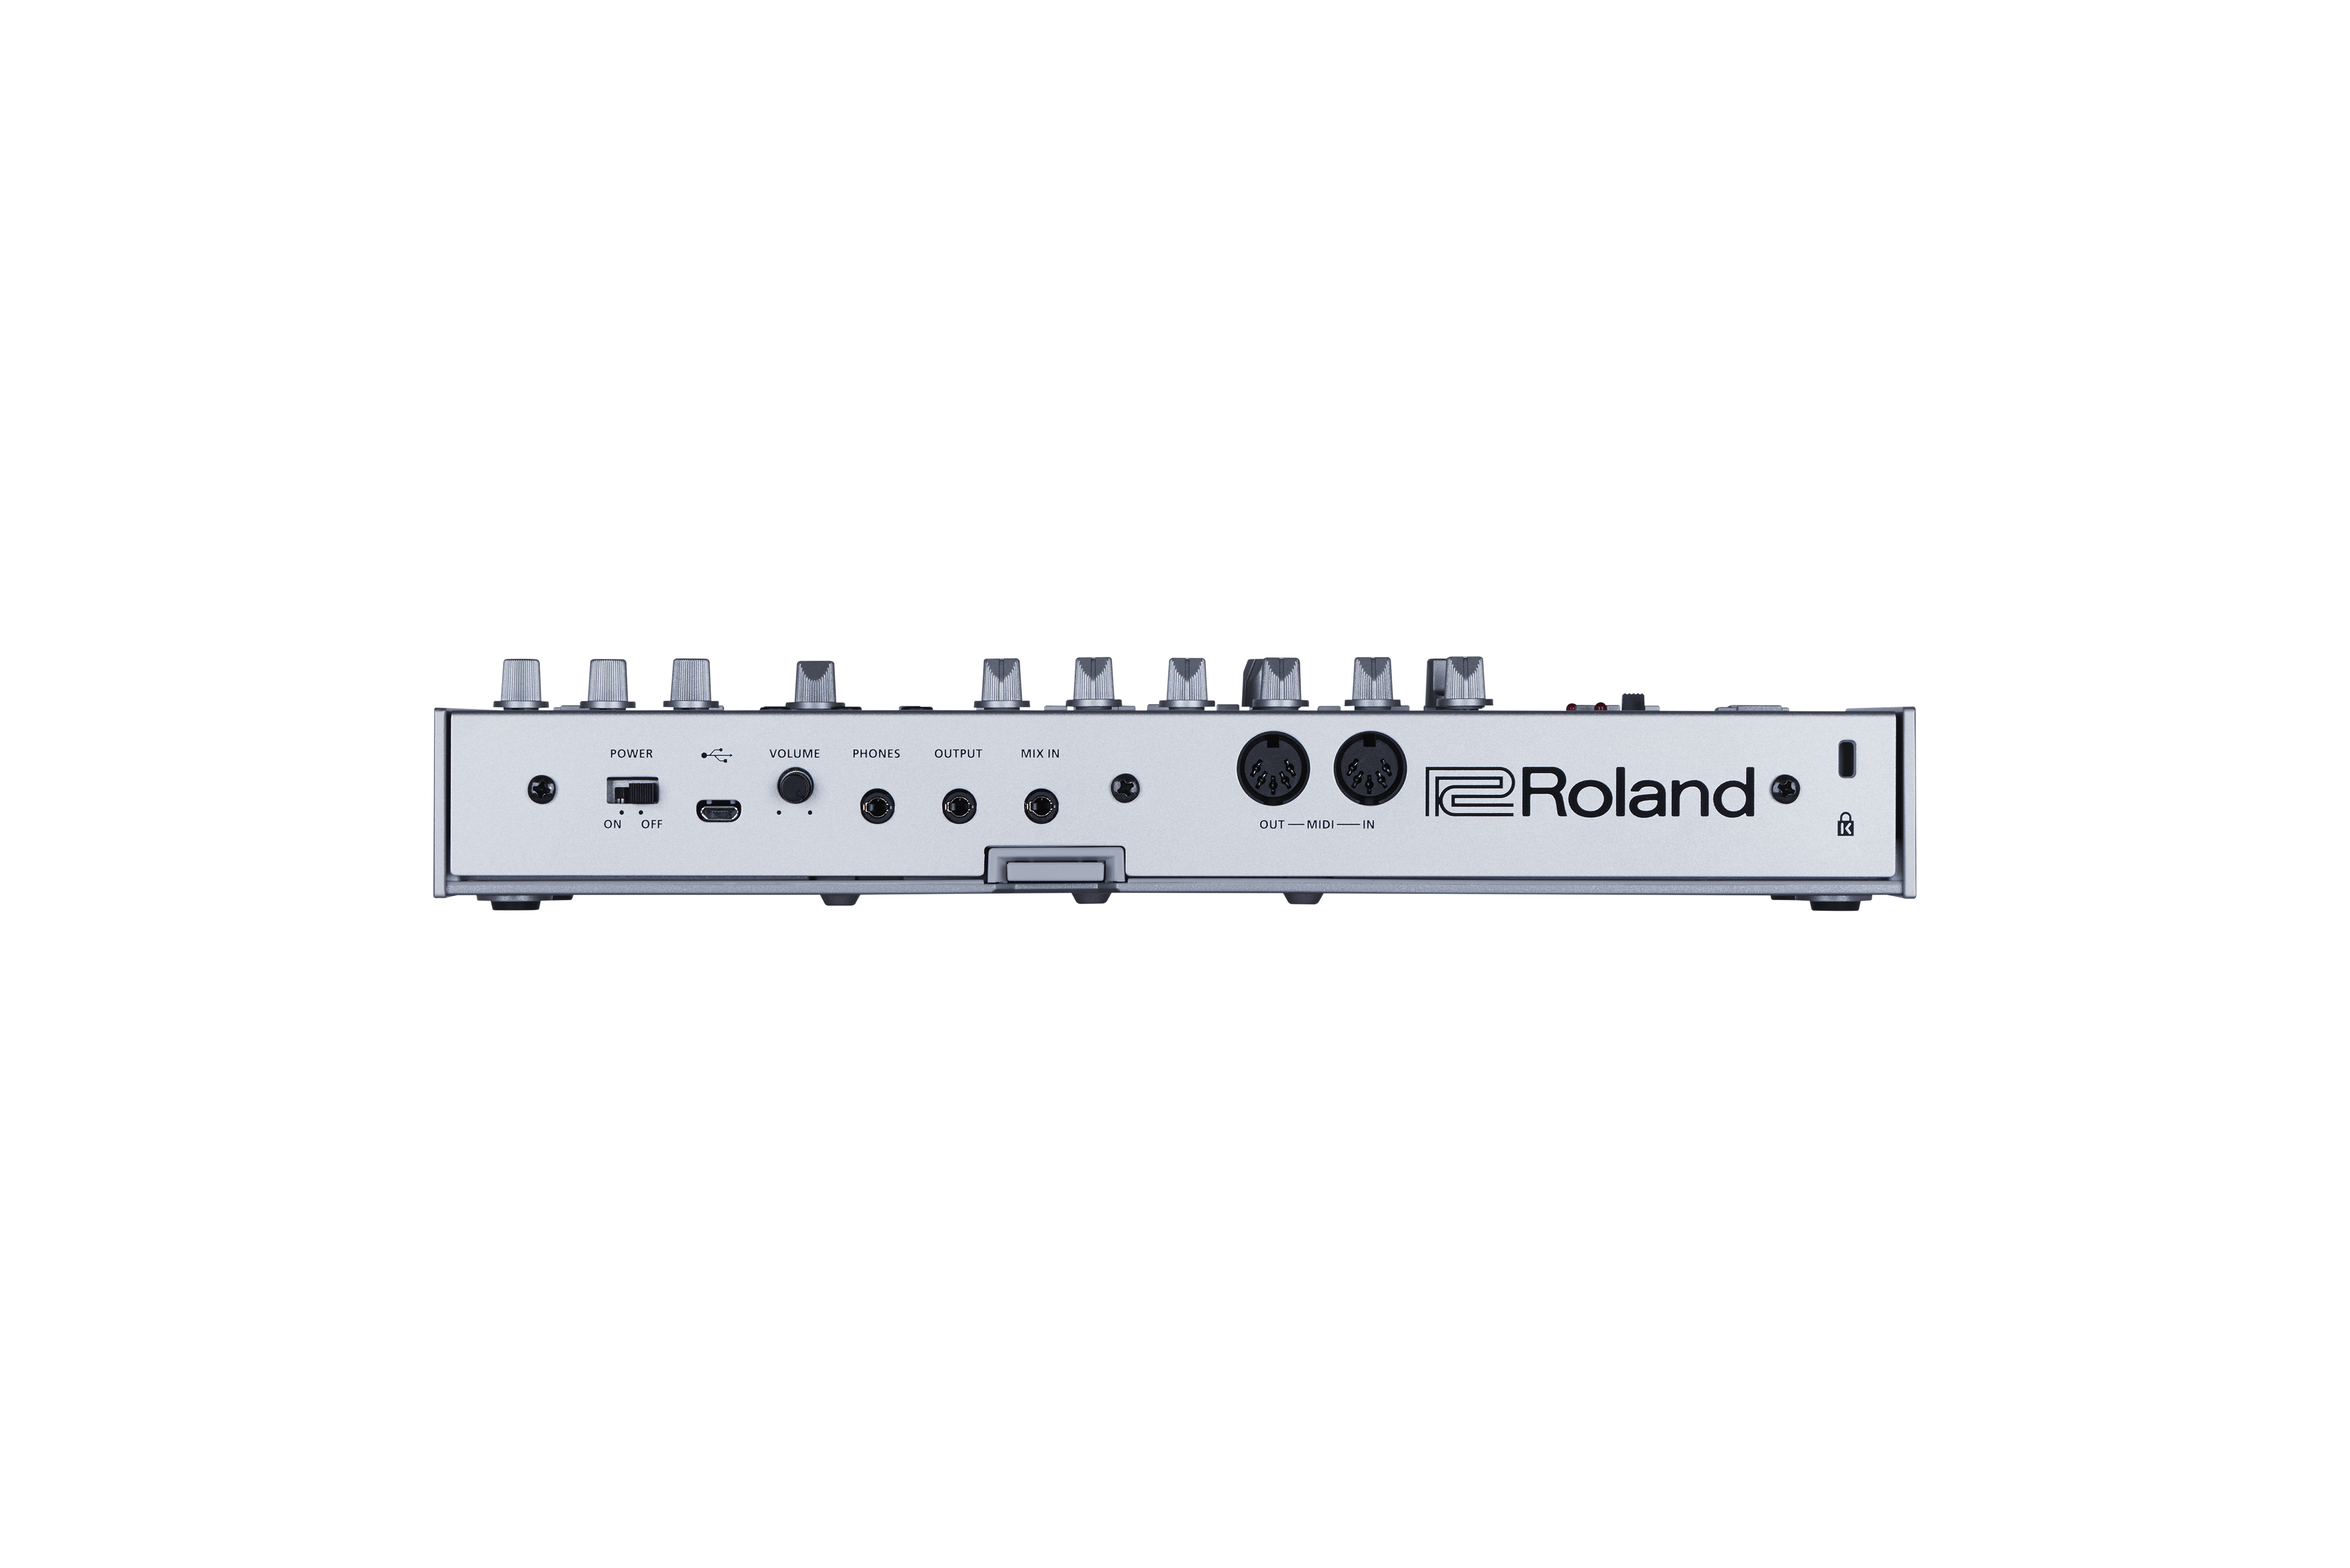 Midi Sound Module Roland зачем нужен. Bass line ru